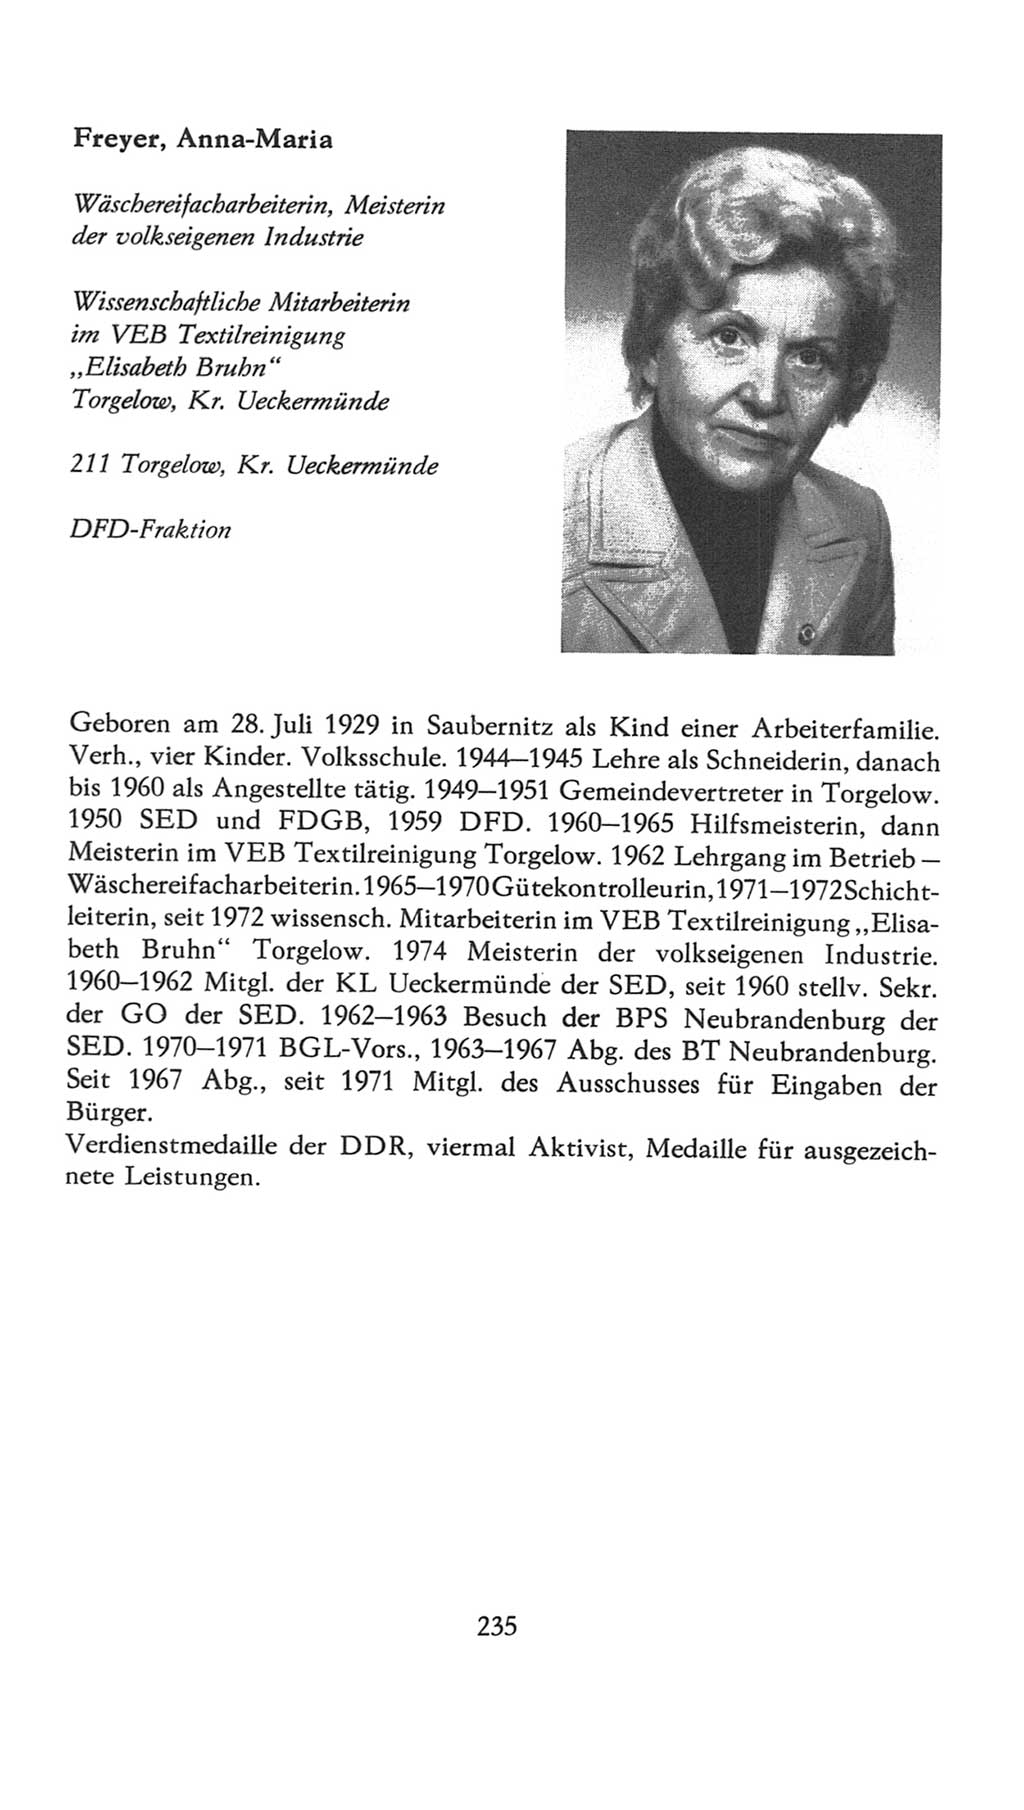 Volkskammer (VK) der Deutschen Demokratischen Republik (DDR), 7. Wahlperiode 1976-1981, Seite 235 (VK. DDR 7. WP. 1976-1981, S. 235)